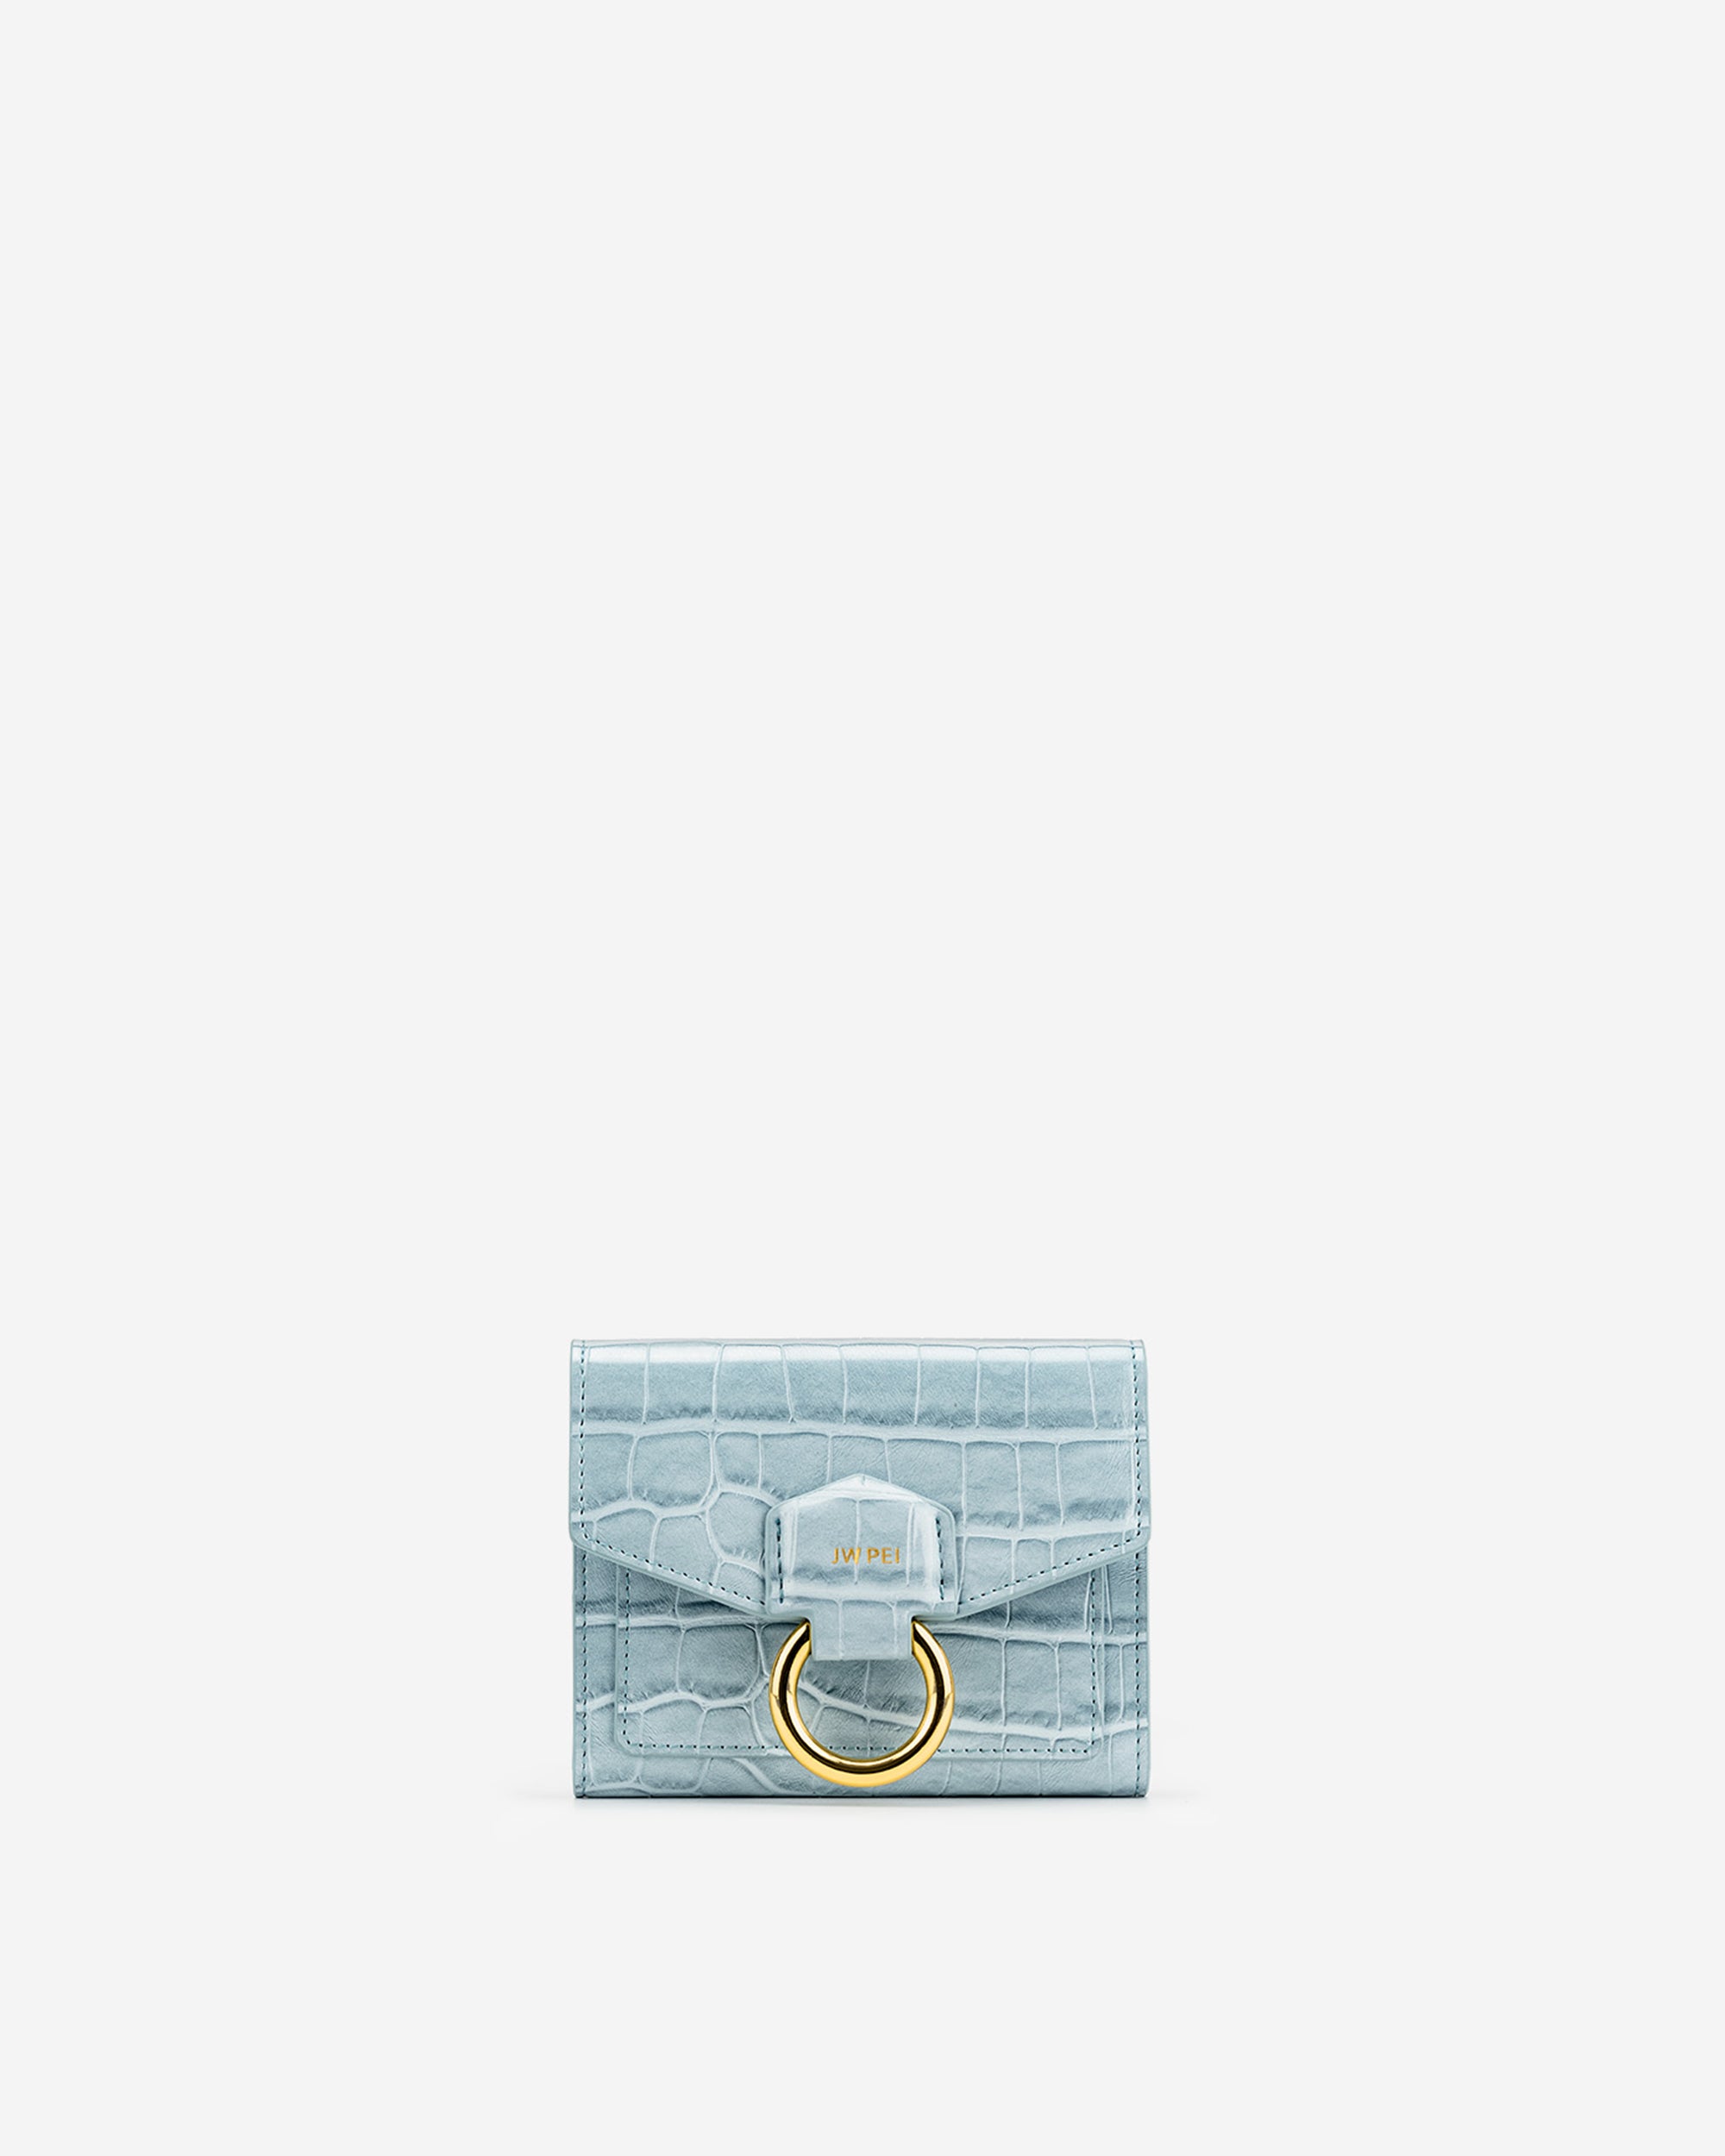 Stella 지갑 - 아이스 블루 악어 무늬